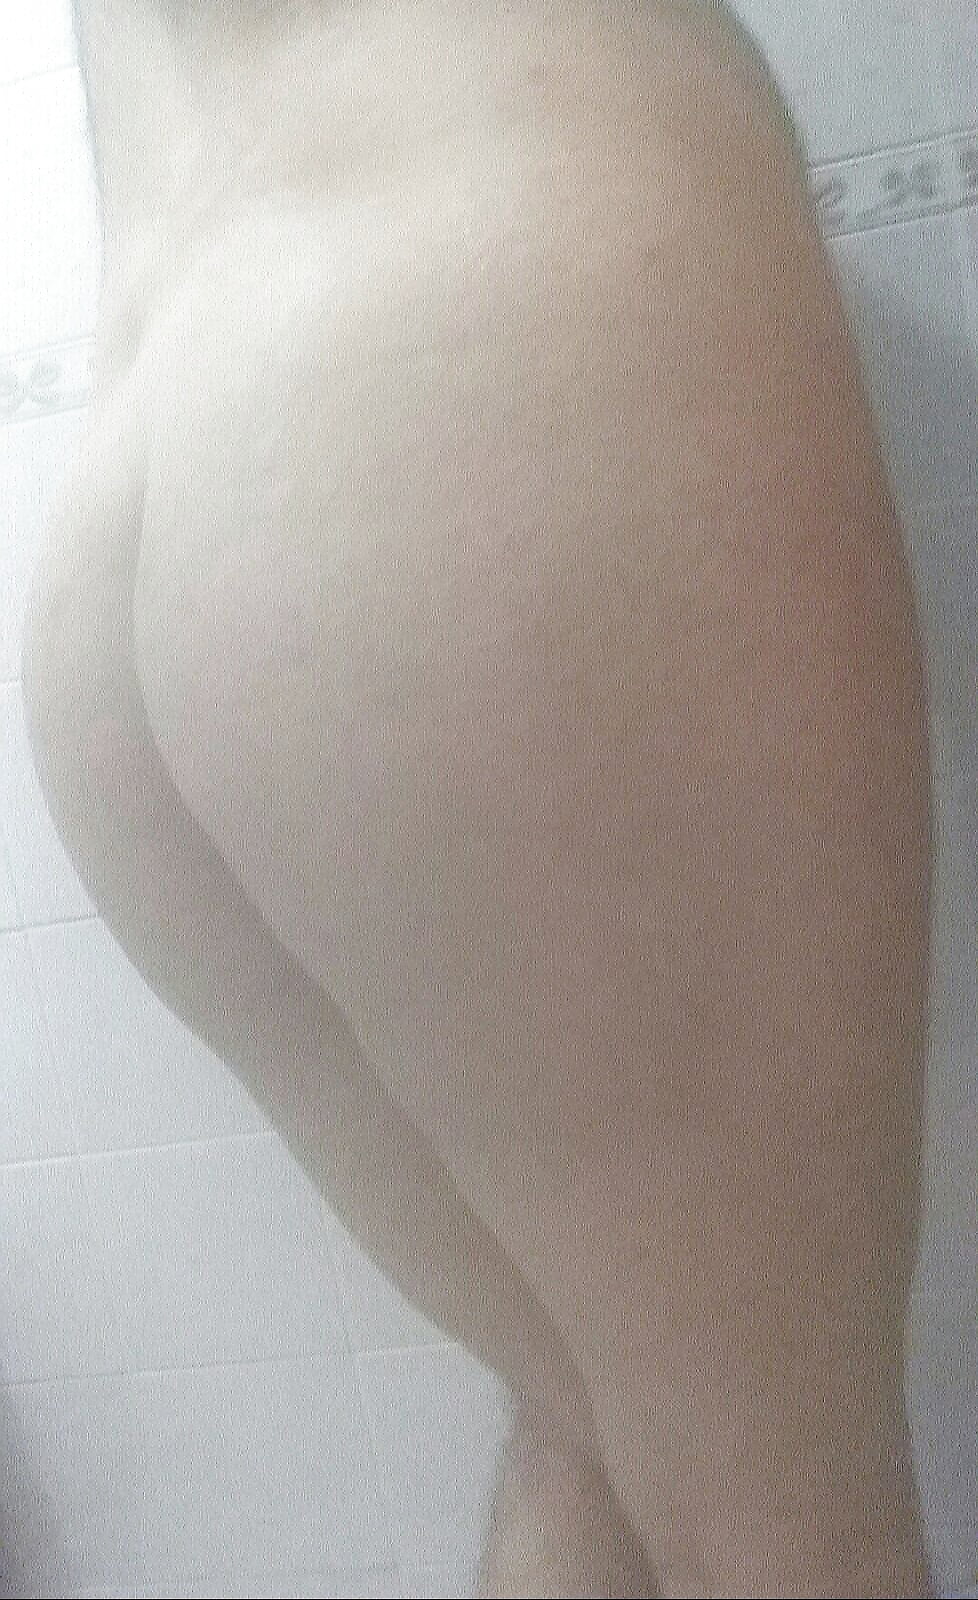 My ass (2/10)